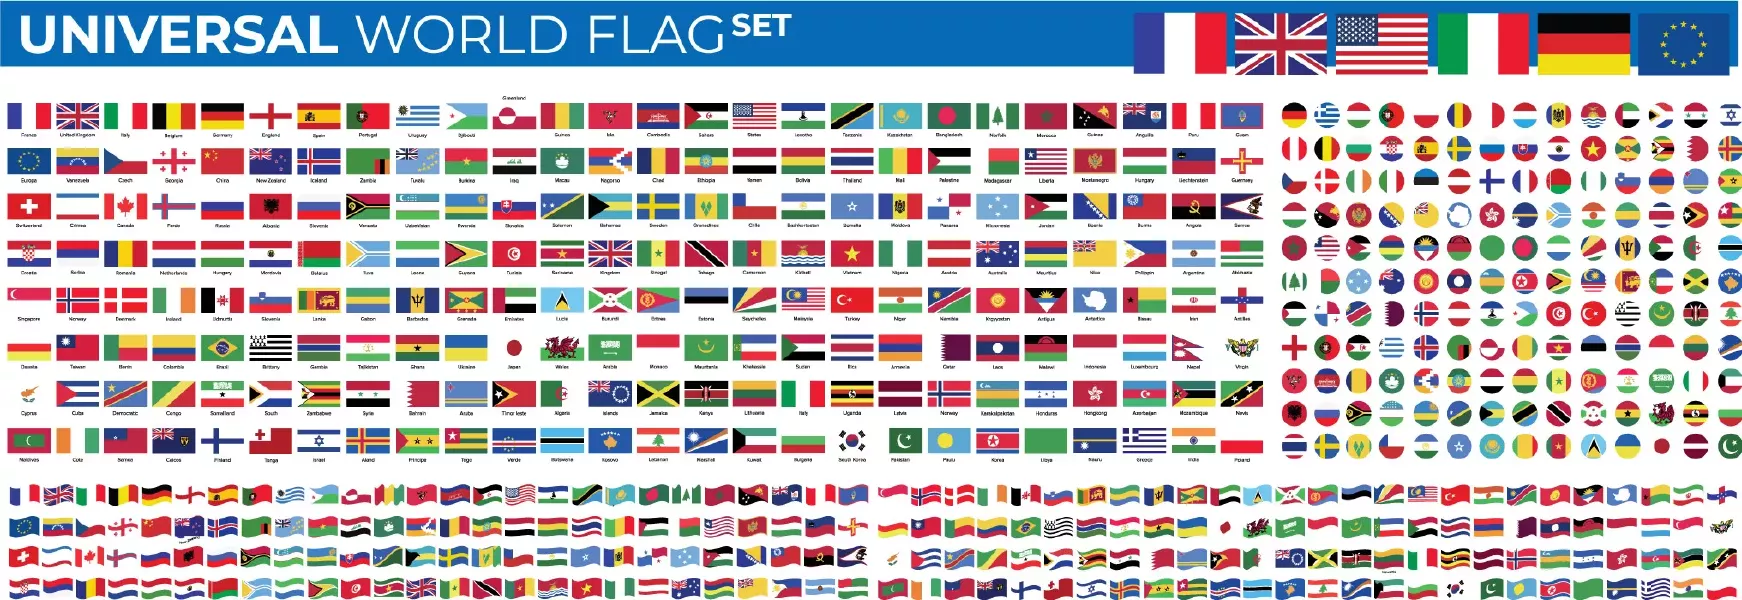 وکتور کلکسیون انواع پرچم های کشور های جهان